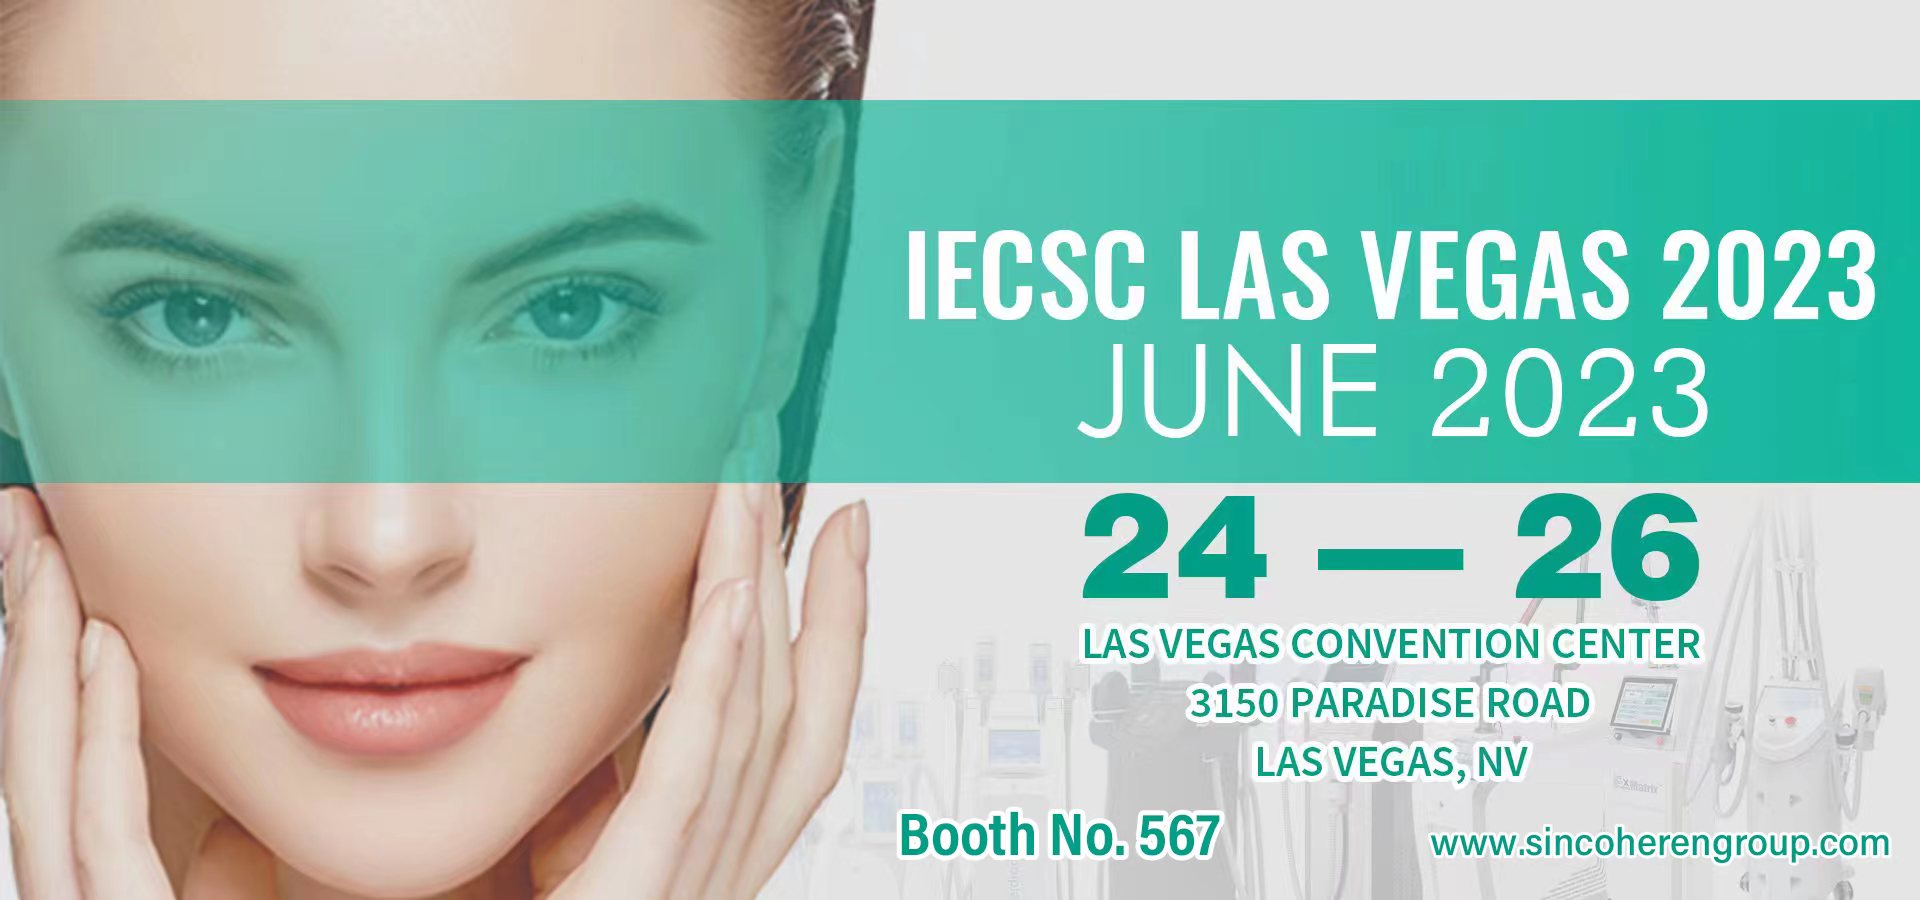 Sincoheren te invita a asistir a la exhibición de belleza de IECSC Las Vegas